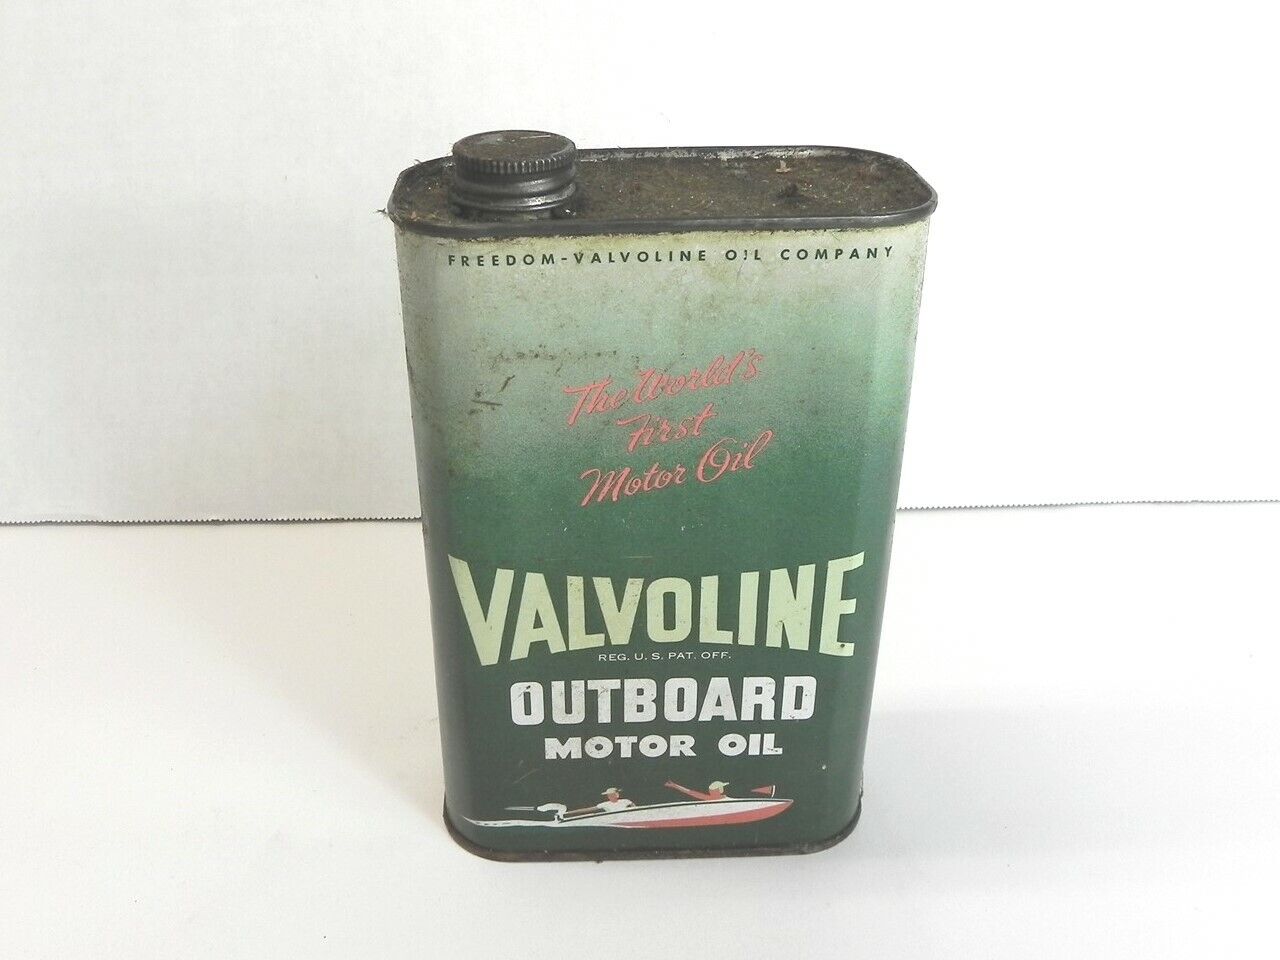 VINTAGE VALVOLINE OUTBOARD MOTOR OIL 